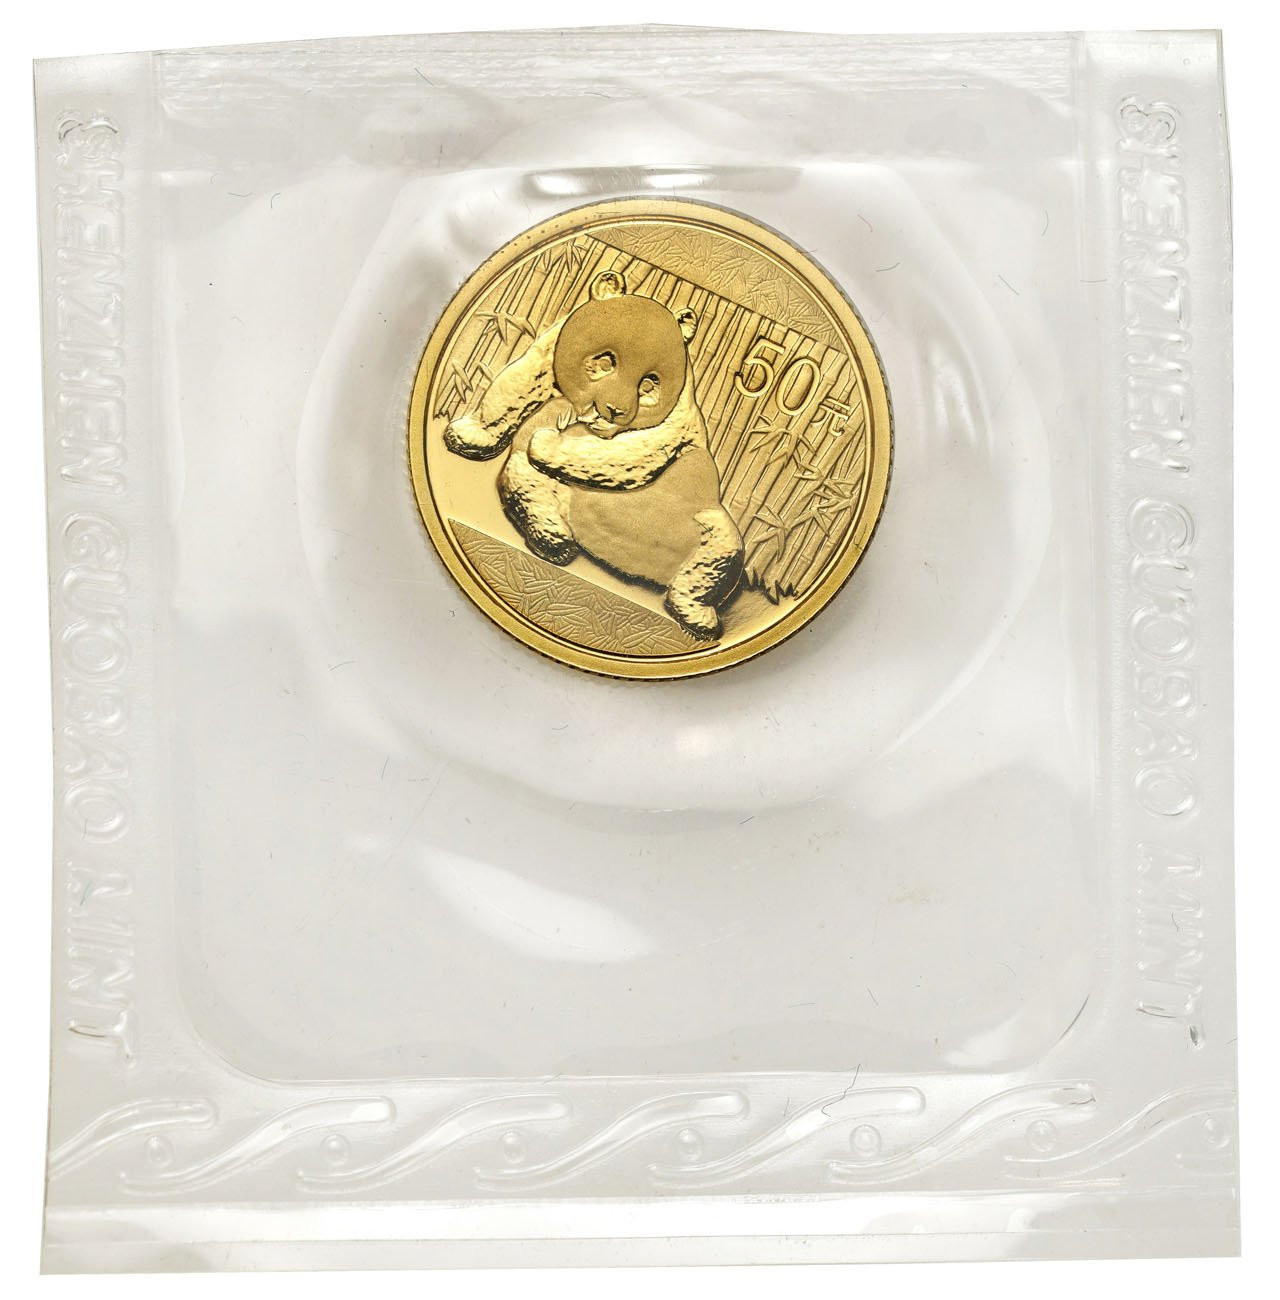 Chiny 50 yuan 2015 Panda - 1/10 uncji złota